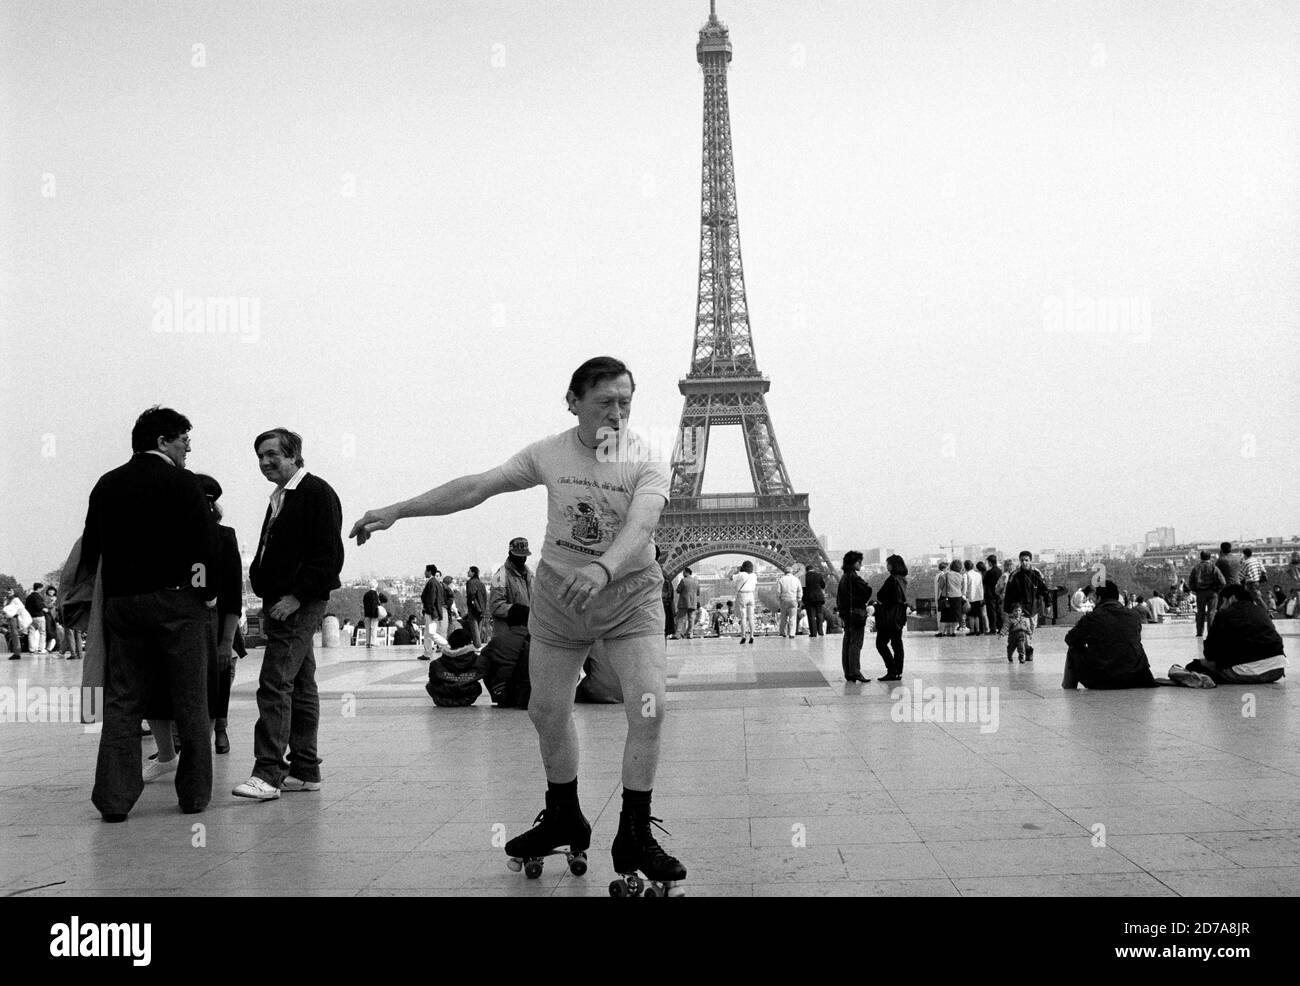 Männer mittleren Alters, die im Trocadero in der Nähe des Eiffelturms in Paris Schlittschuhlaufen. 1995. BILD VON DAVID BAGNALL, 1990er Personen, die außerhalb der Abteilung Aufmerksamkeit suchen Stockfoto